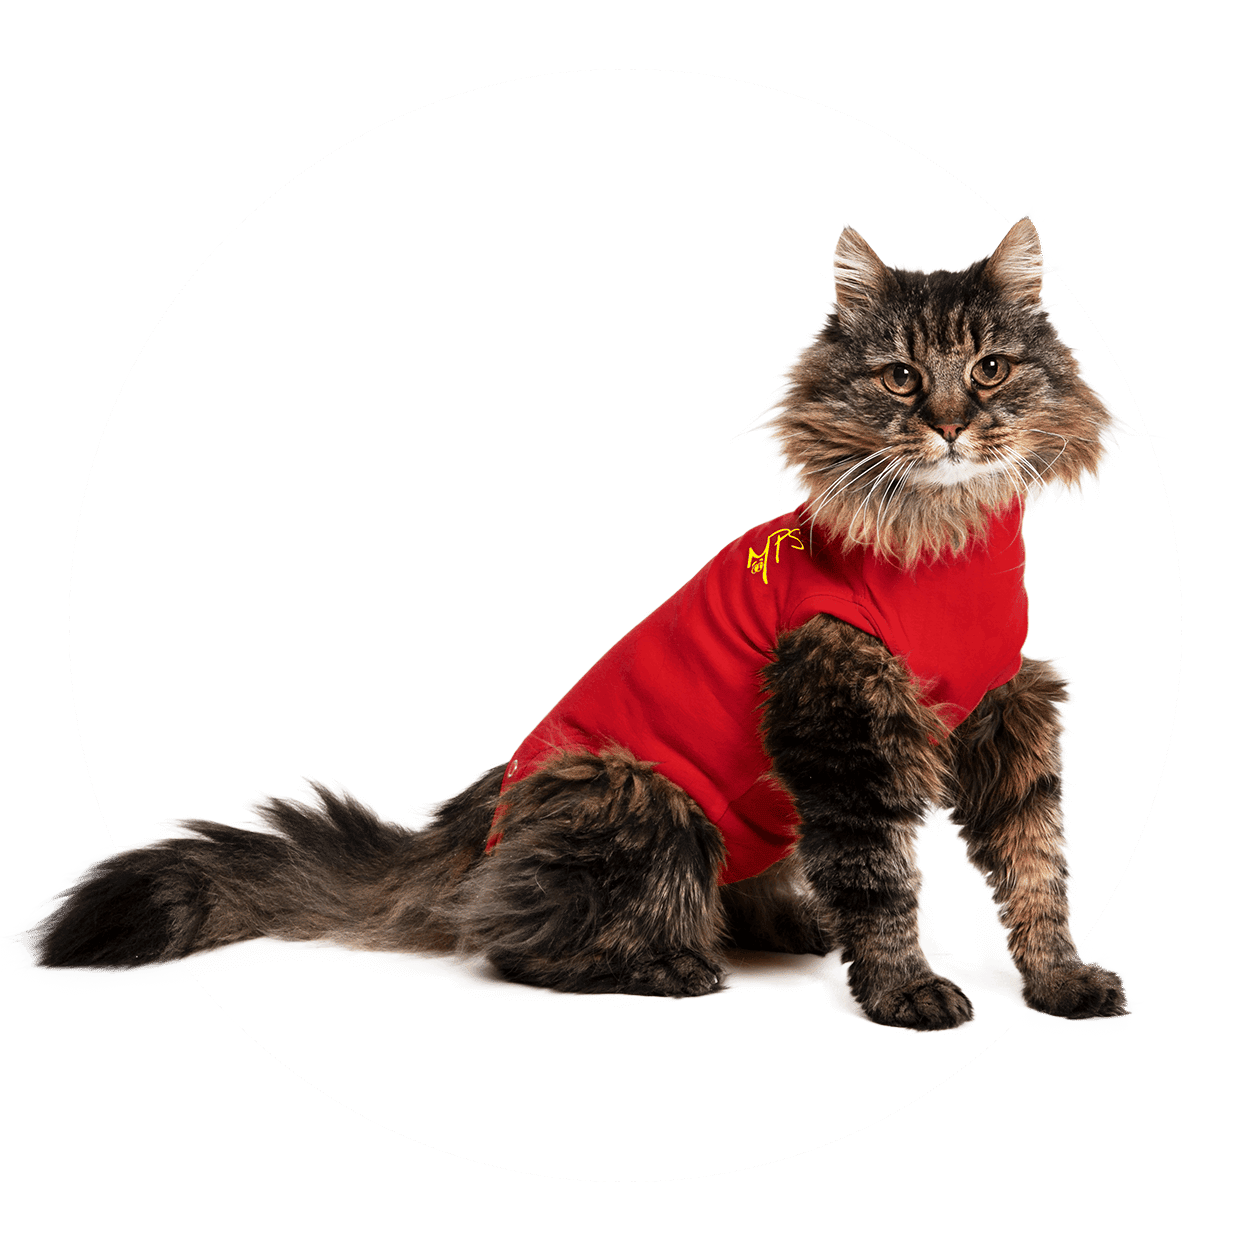 Dictatuur afstand Factuur Medical Pet Shirt Kat kopen? Veilig en betrouwbaar bestellen!